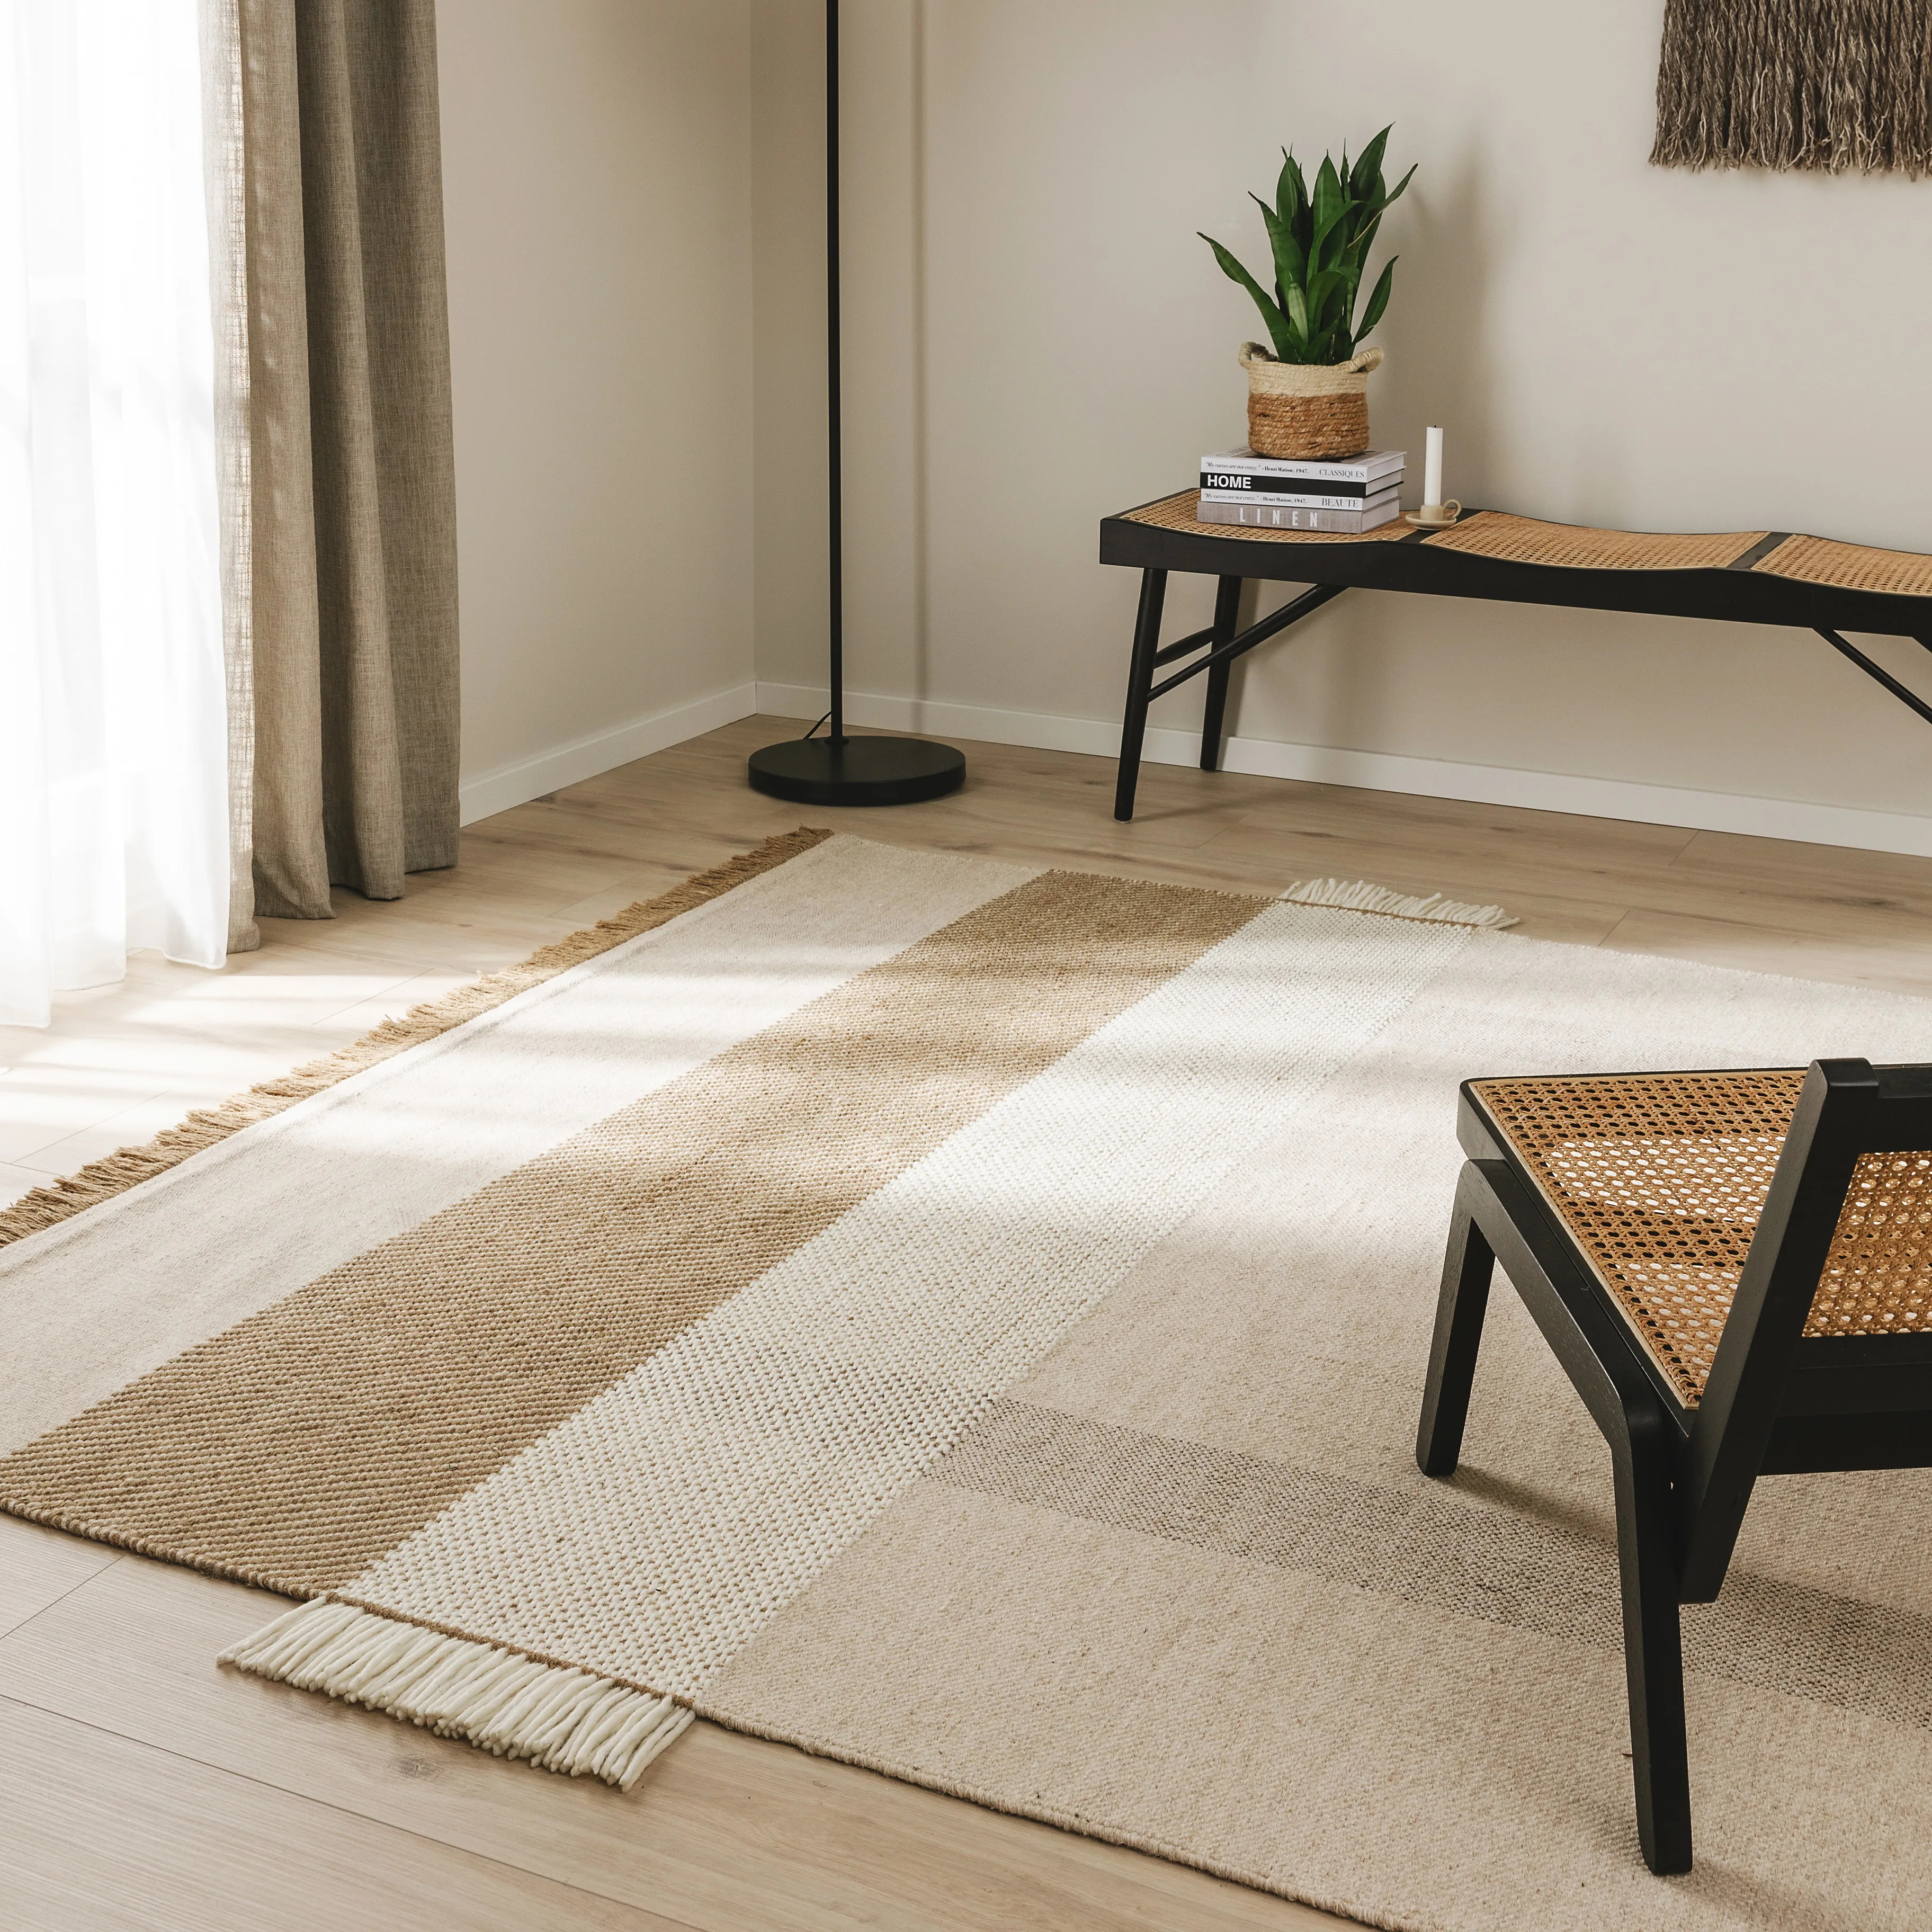 Flachgewebter Teppich in Braun, Beige und Grau mit Fransen unter einem schwarzen Rattansessel für ein gemütliches Ambiente im Wohnzimmer